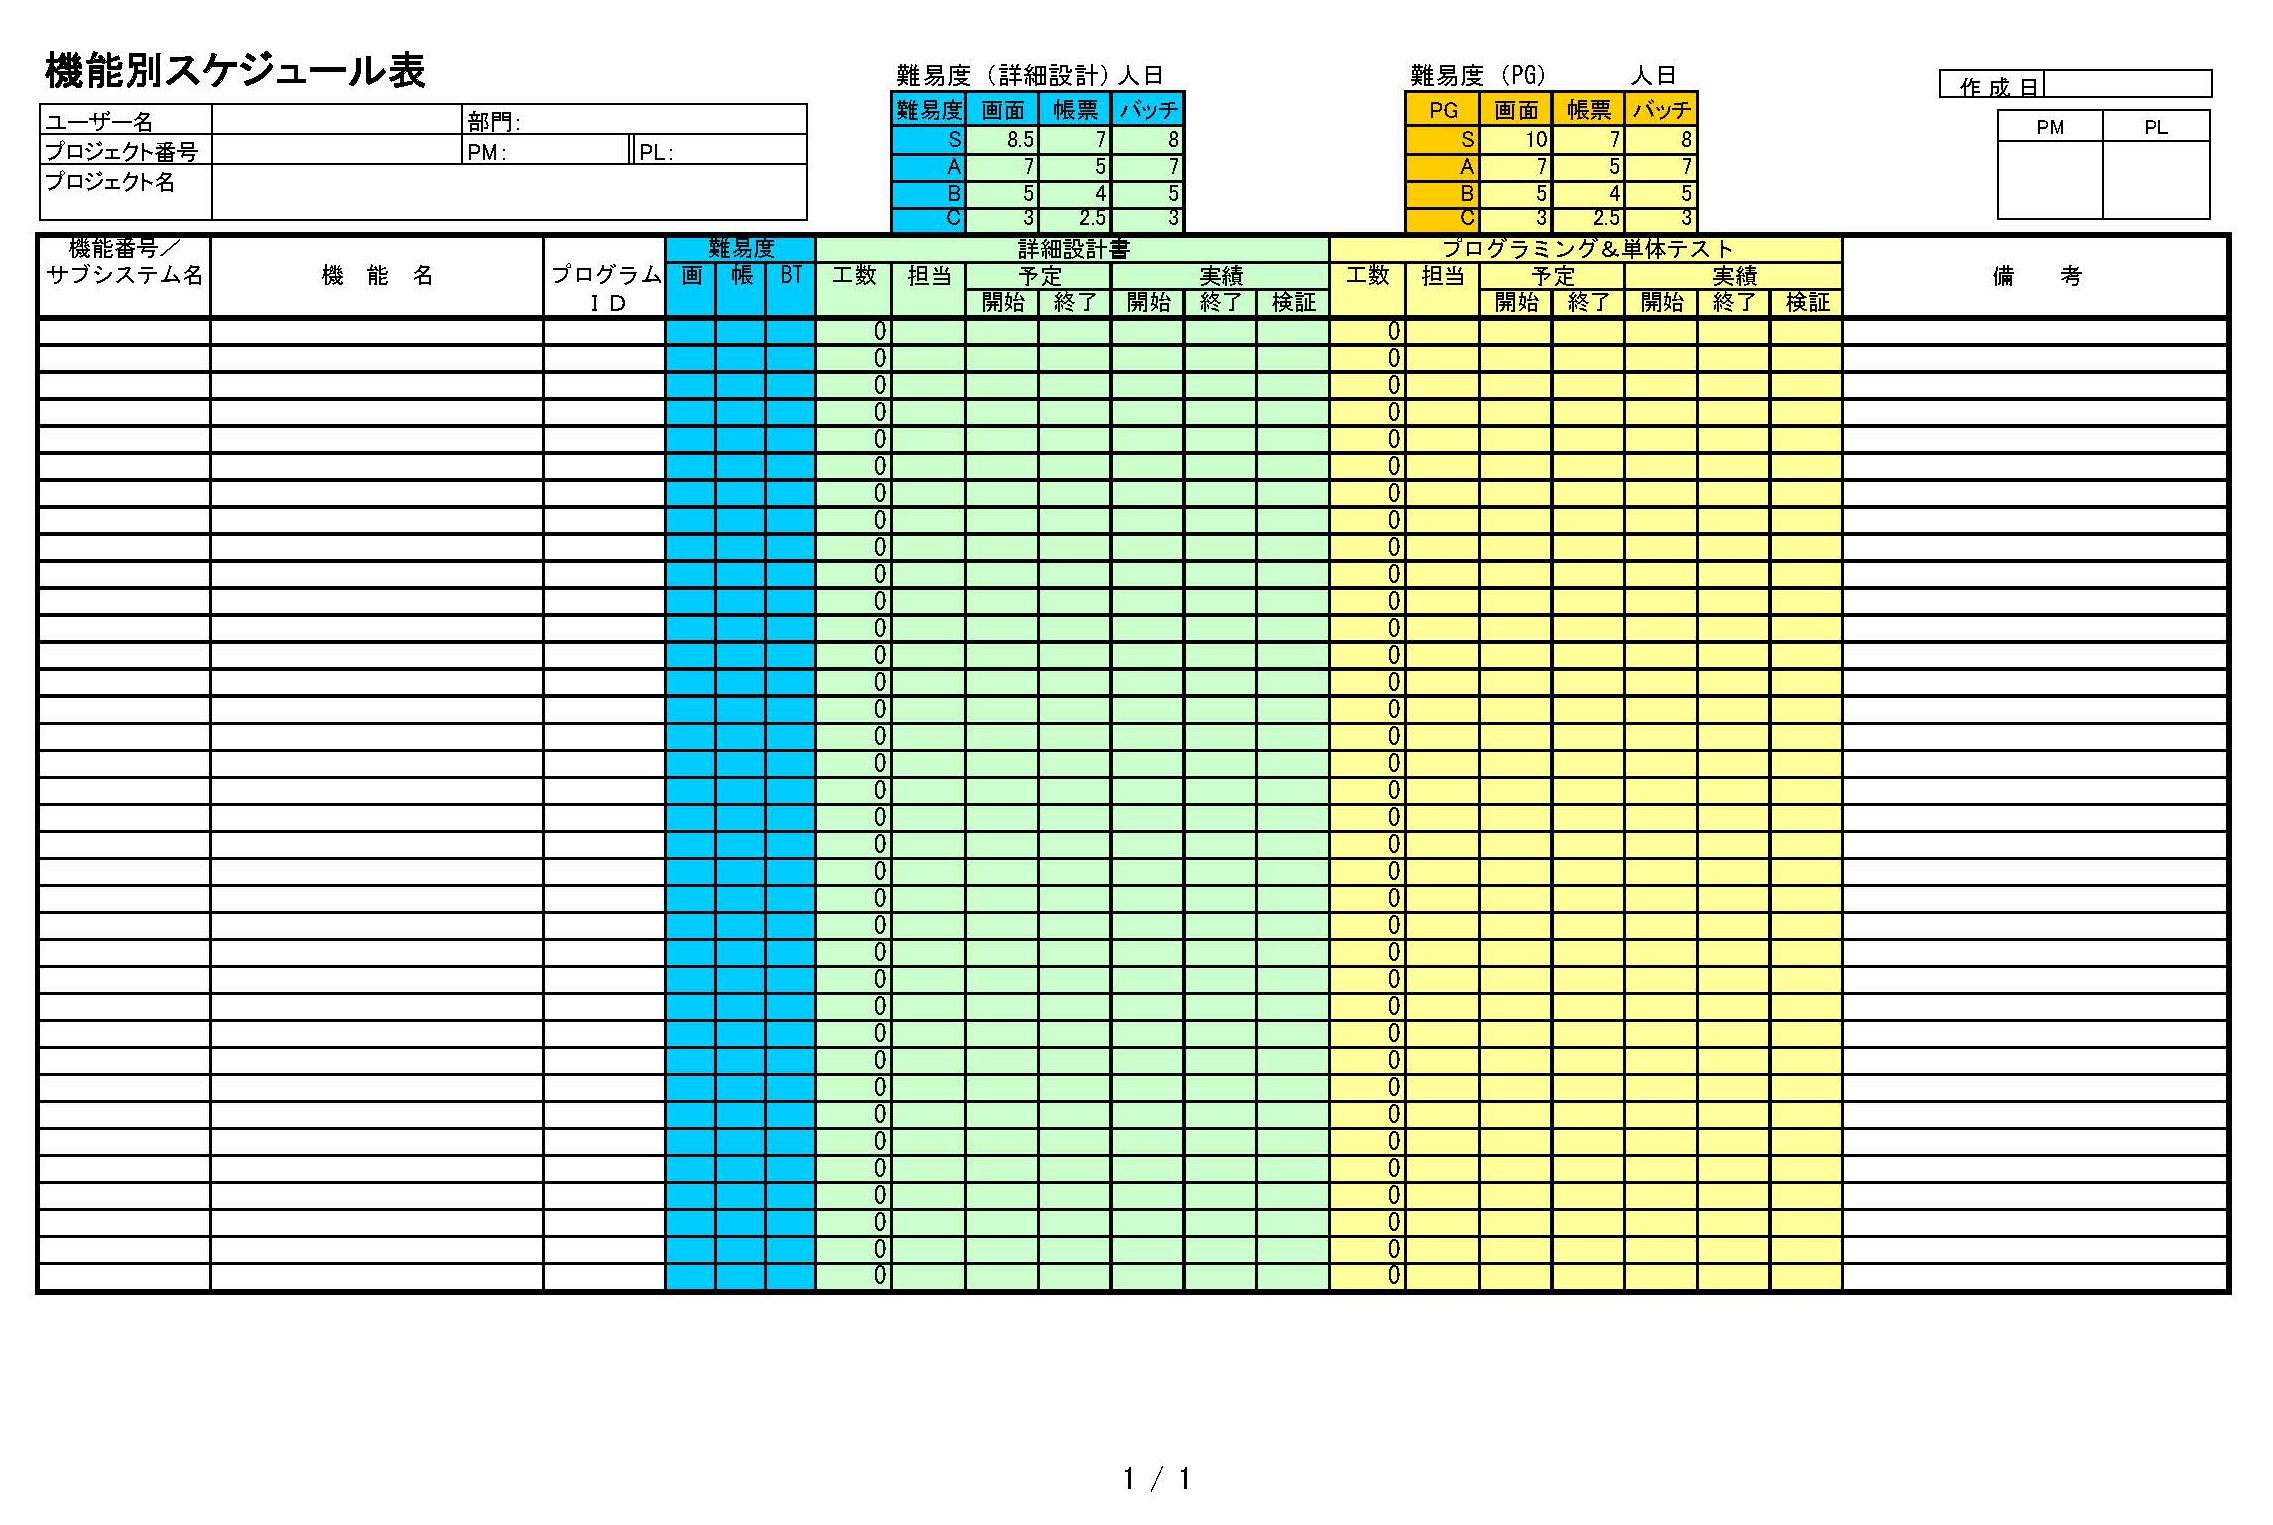 機能別スケジュール表のテンプレート書式（Excel・エクセル）